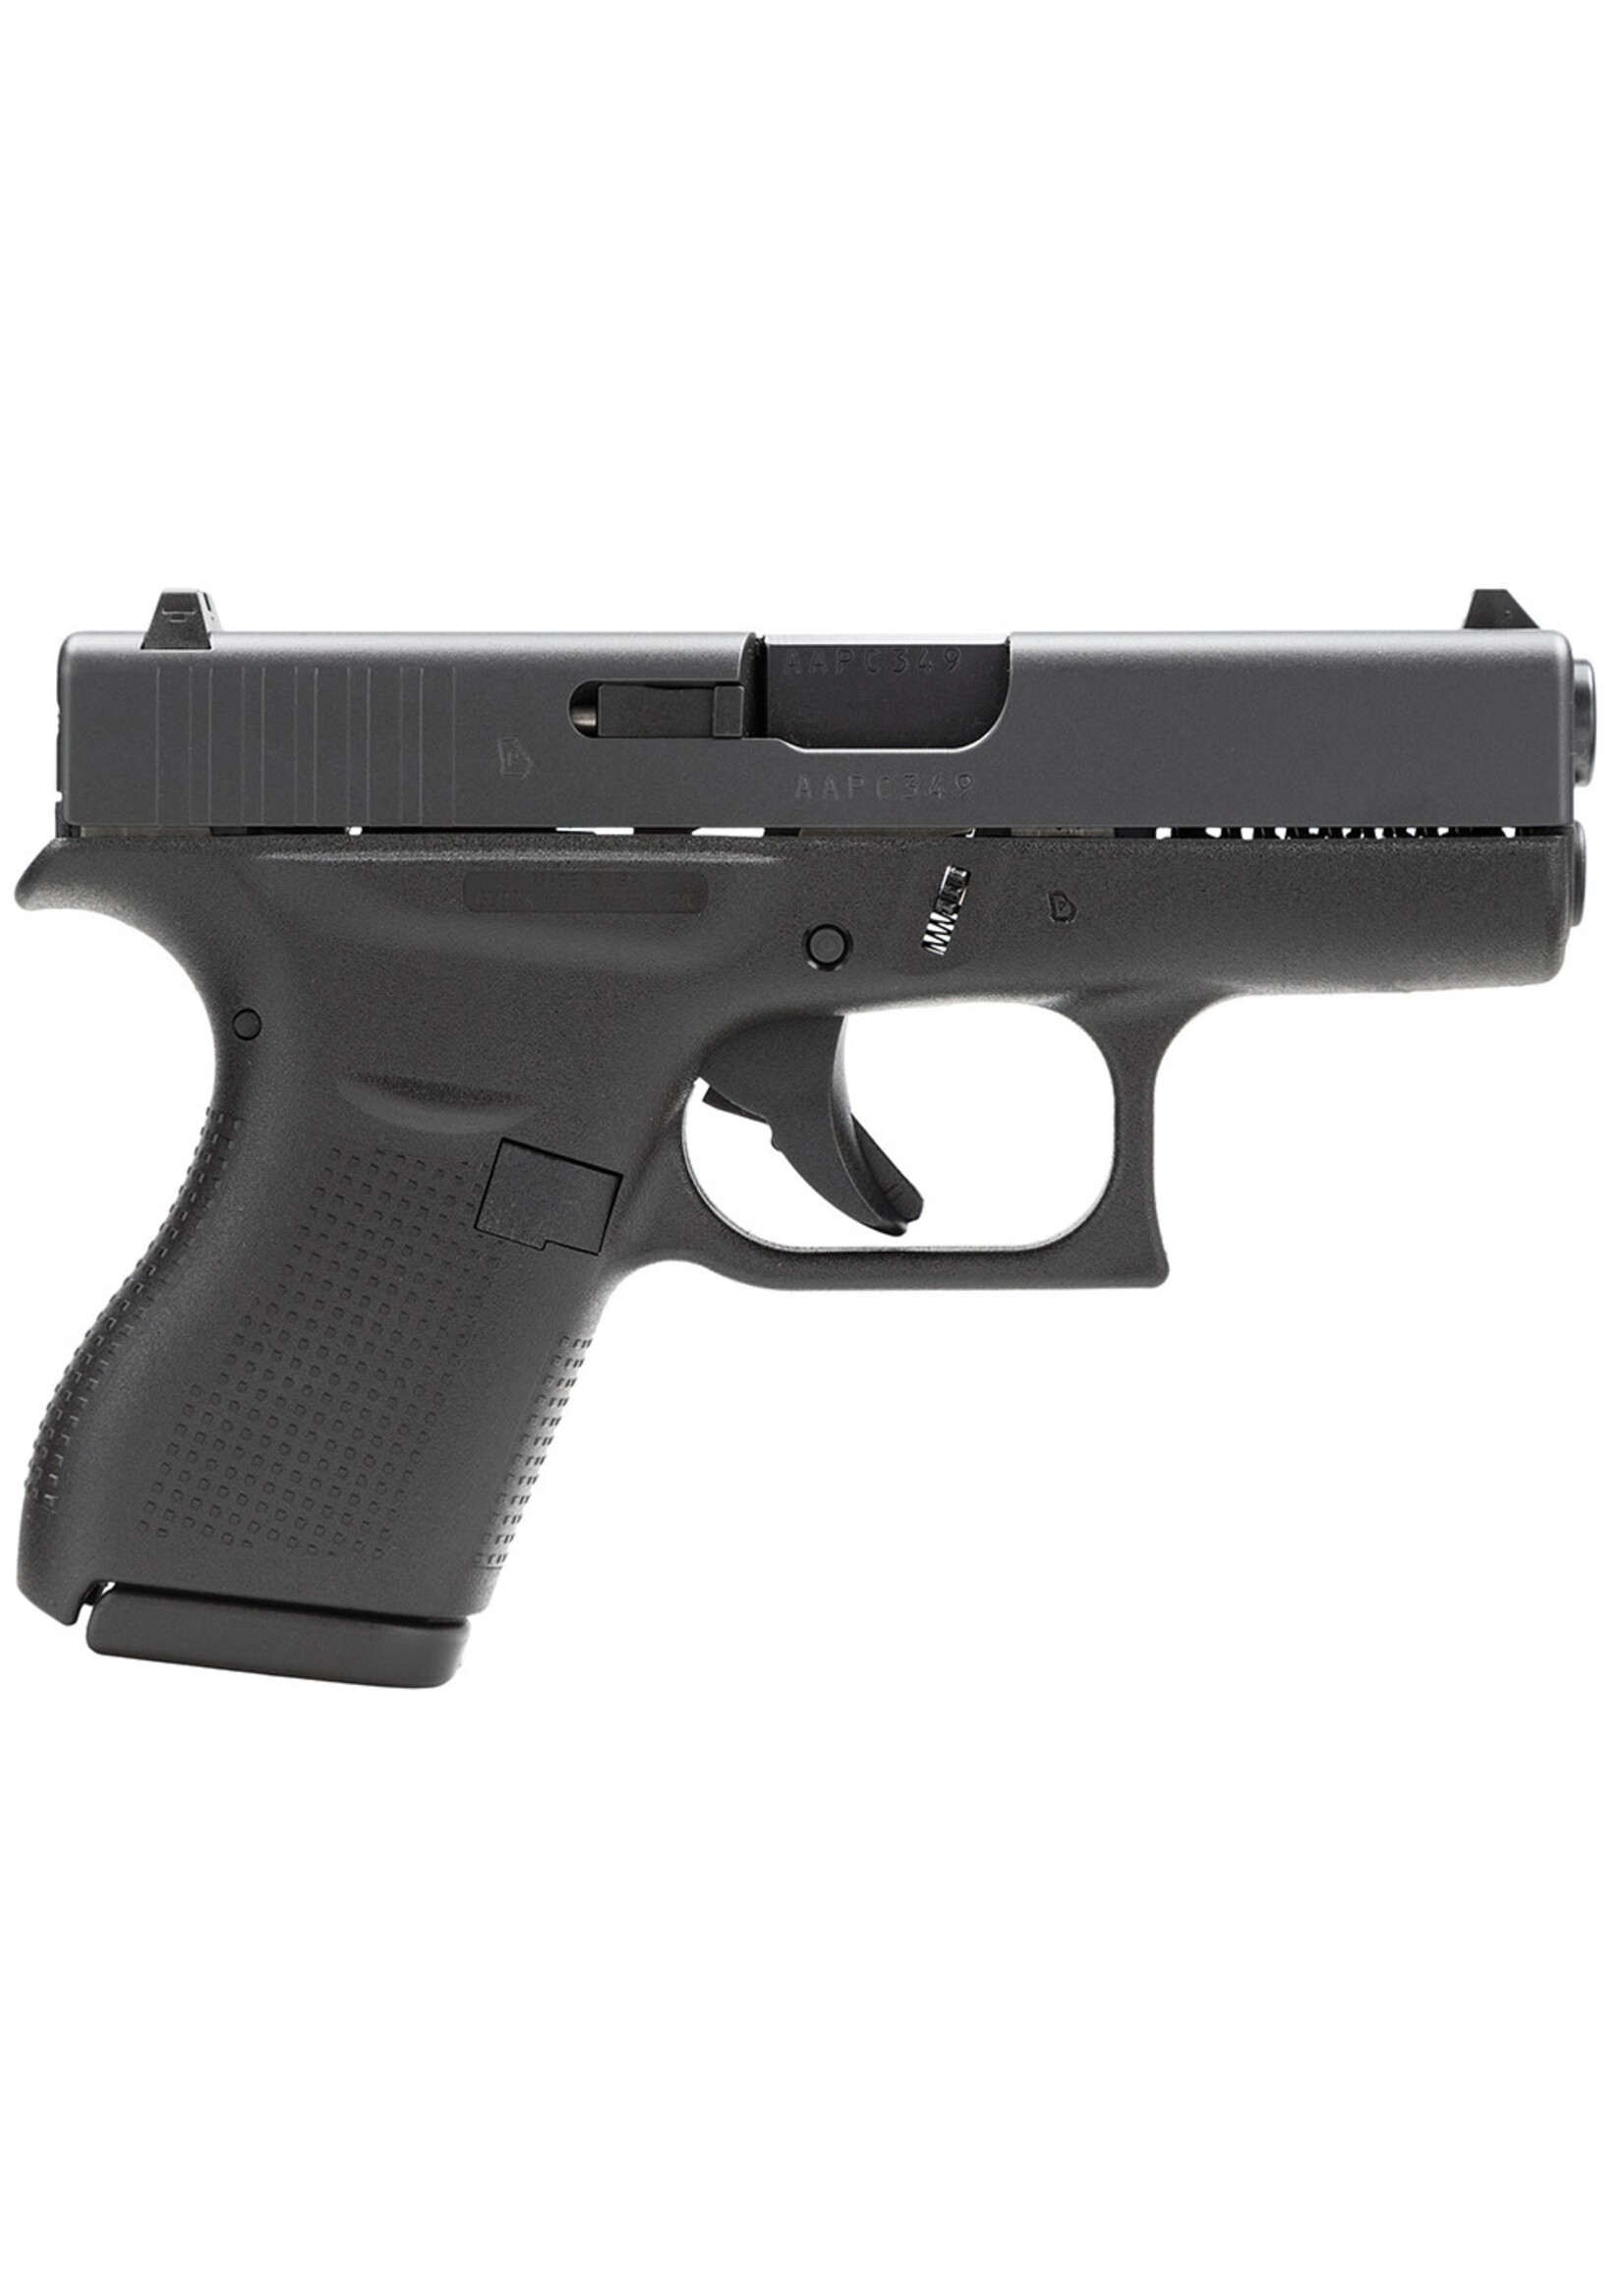 Glock Glock UI4250201 G42 Gen3 Subcompact 380 ACP 3.25" Barrel 6+1, Black Frame & Slide, Rough Textured Grip, Safe Action Trigger (US Made)